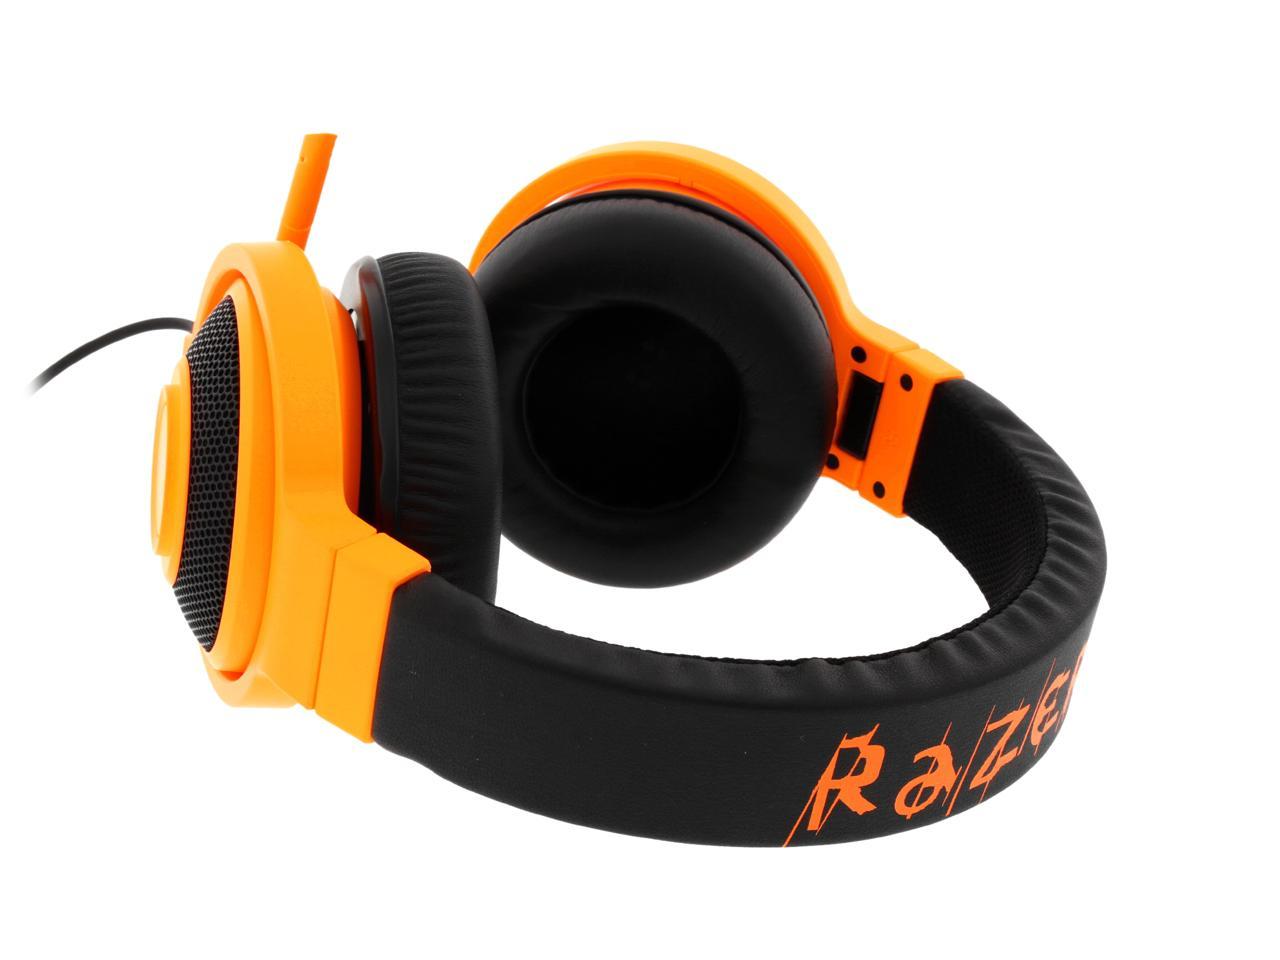 Razer Kraken Pro Over Ear PC Gaming and Music Headset ...